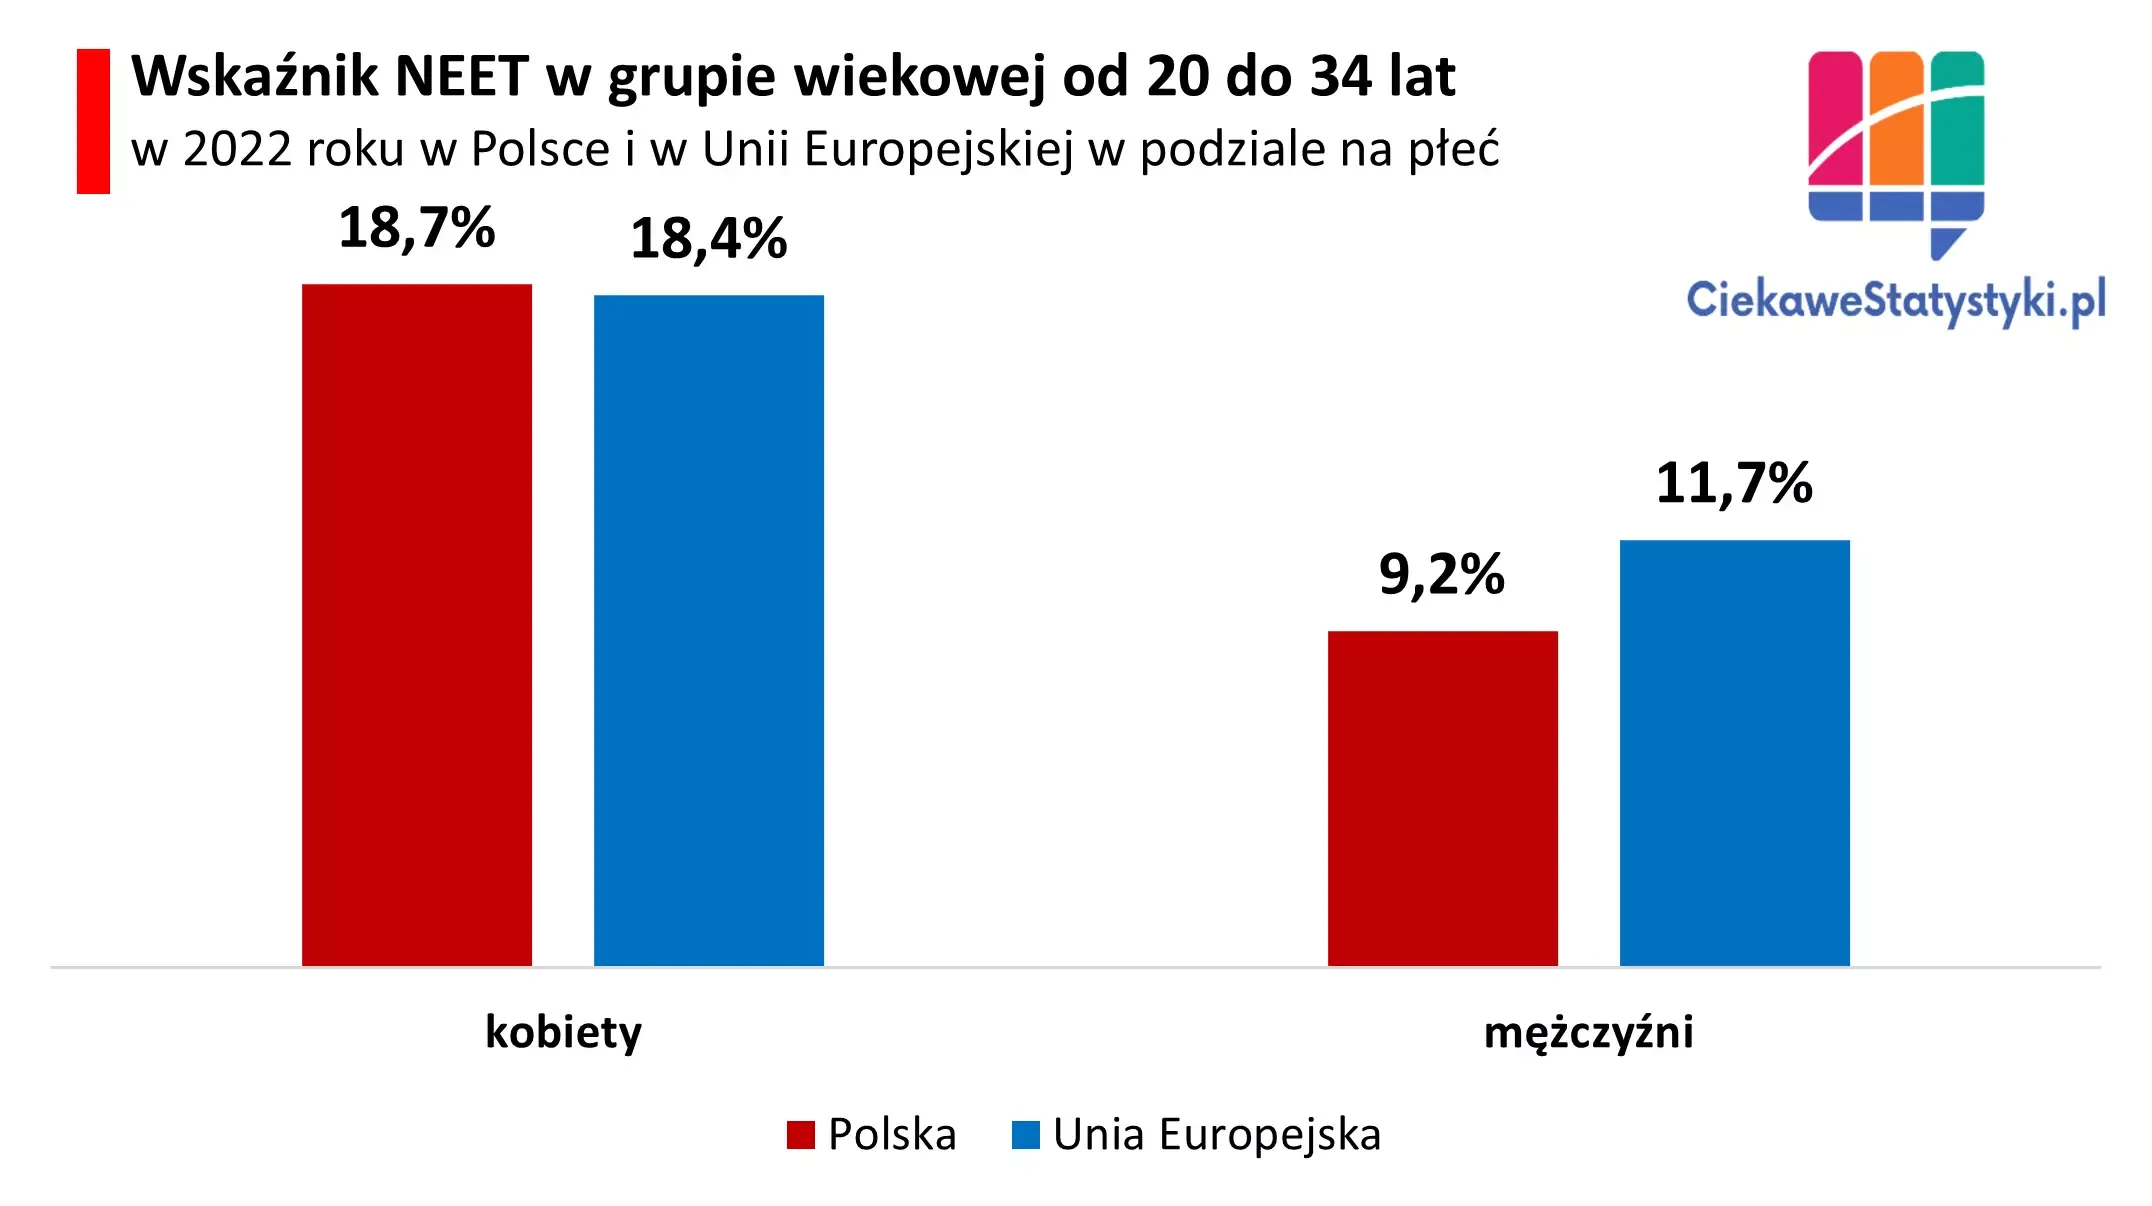 Wykres przedstawia młode osoby NEET w Polsce i w Unii Europejskiej w podziale na płeć